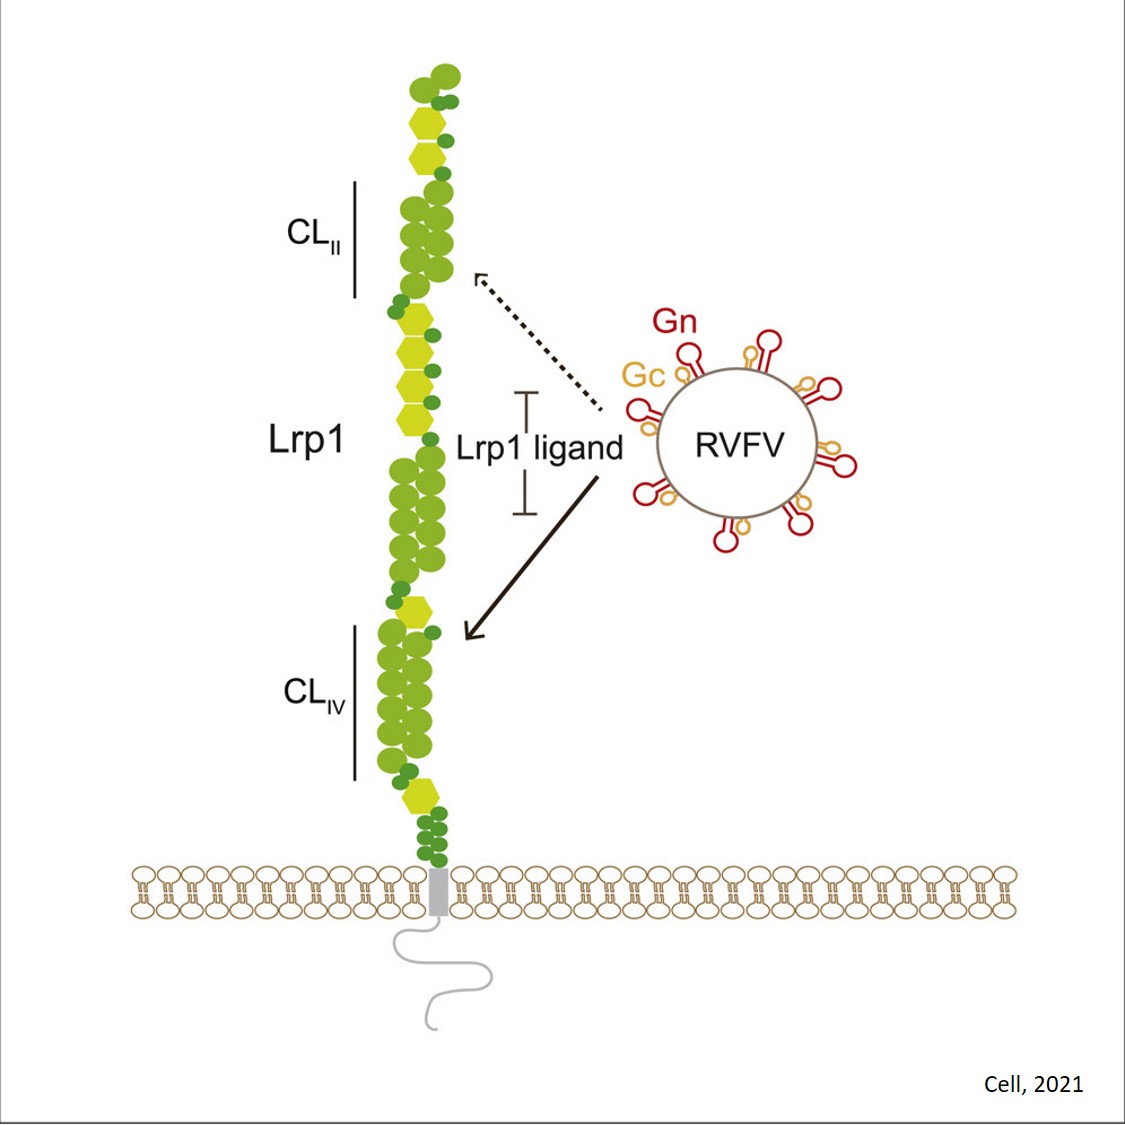 Lrp1 is a host entry factor for Rift Valley fever virus